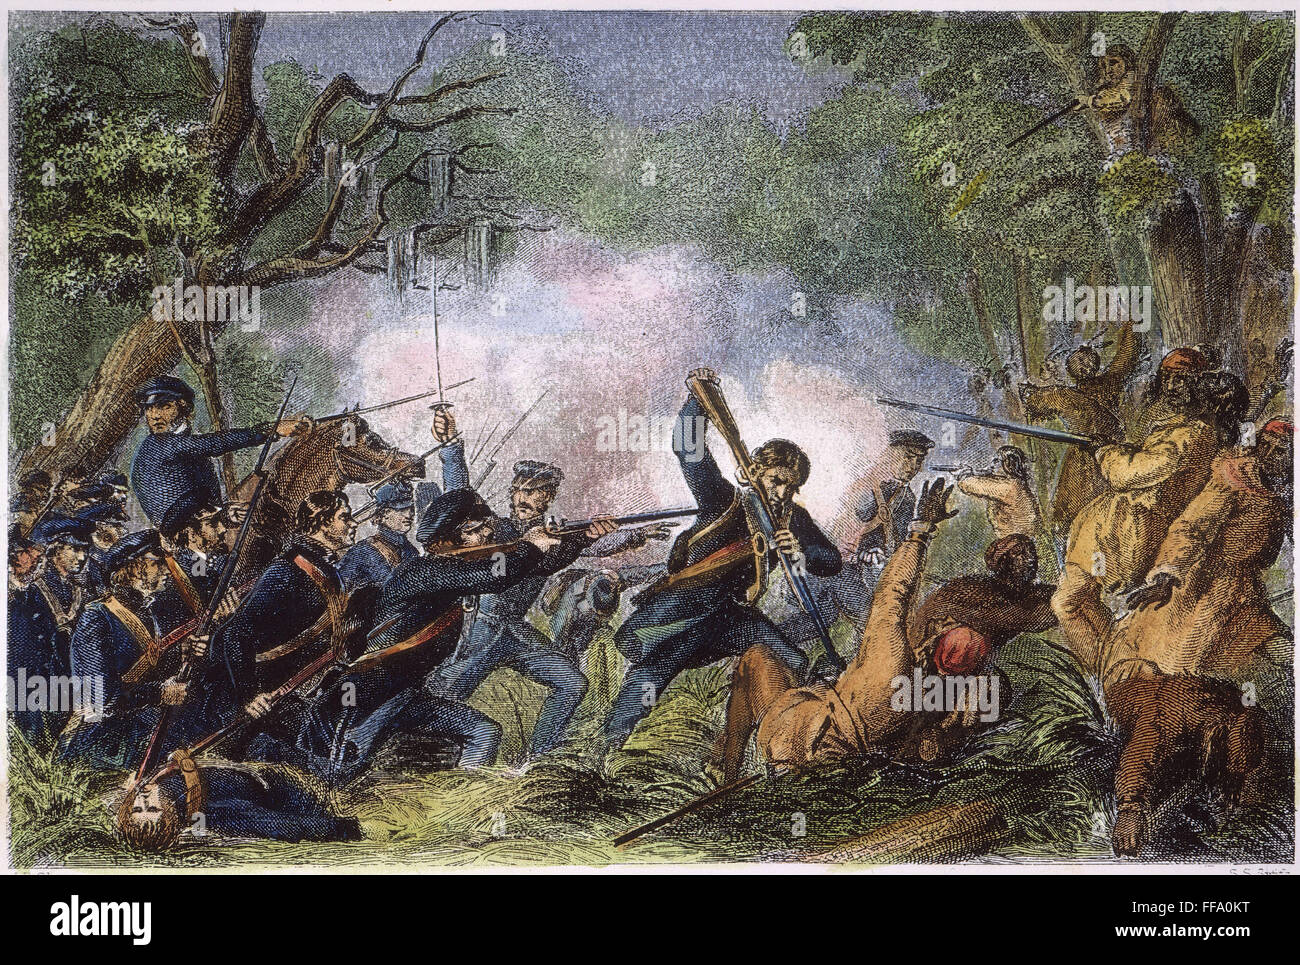 ZACHARY TAYLOR (1784-1850). /NColonel Zachary Taylor et ses hommes à l'encontre du Seminole Les amérindiens au lac Okeechobee, en Floride, le 25 décembre 1837. Gravure sur acier, 1860. Banque D'Images